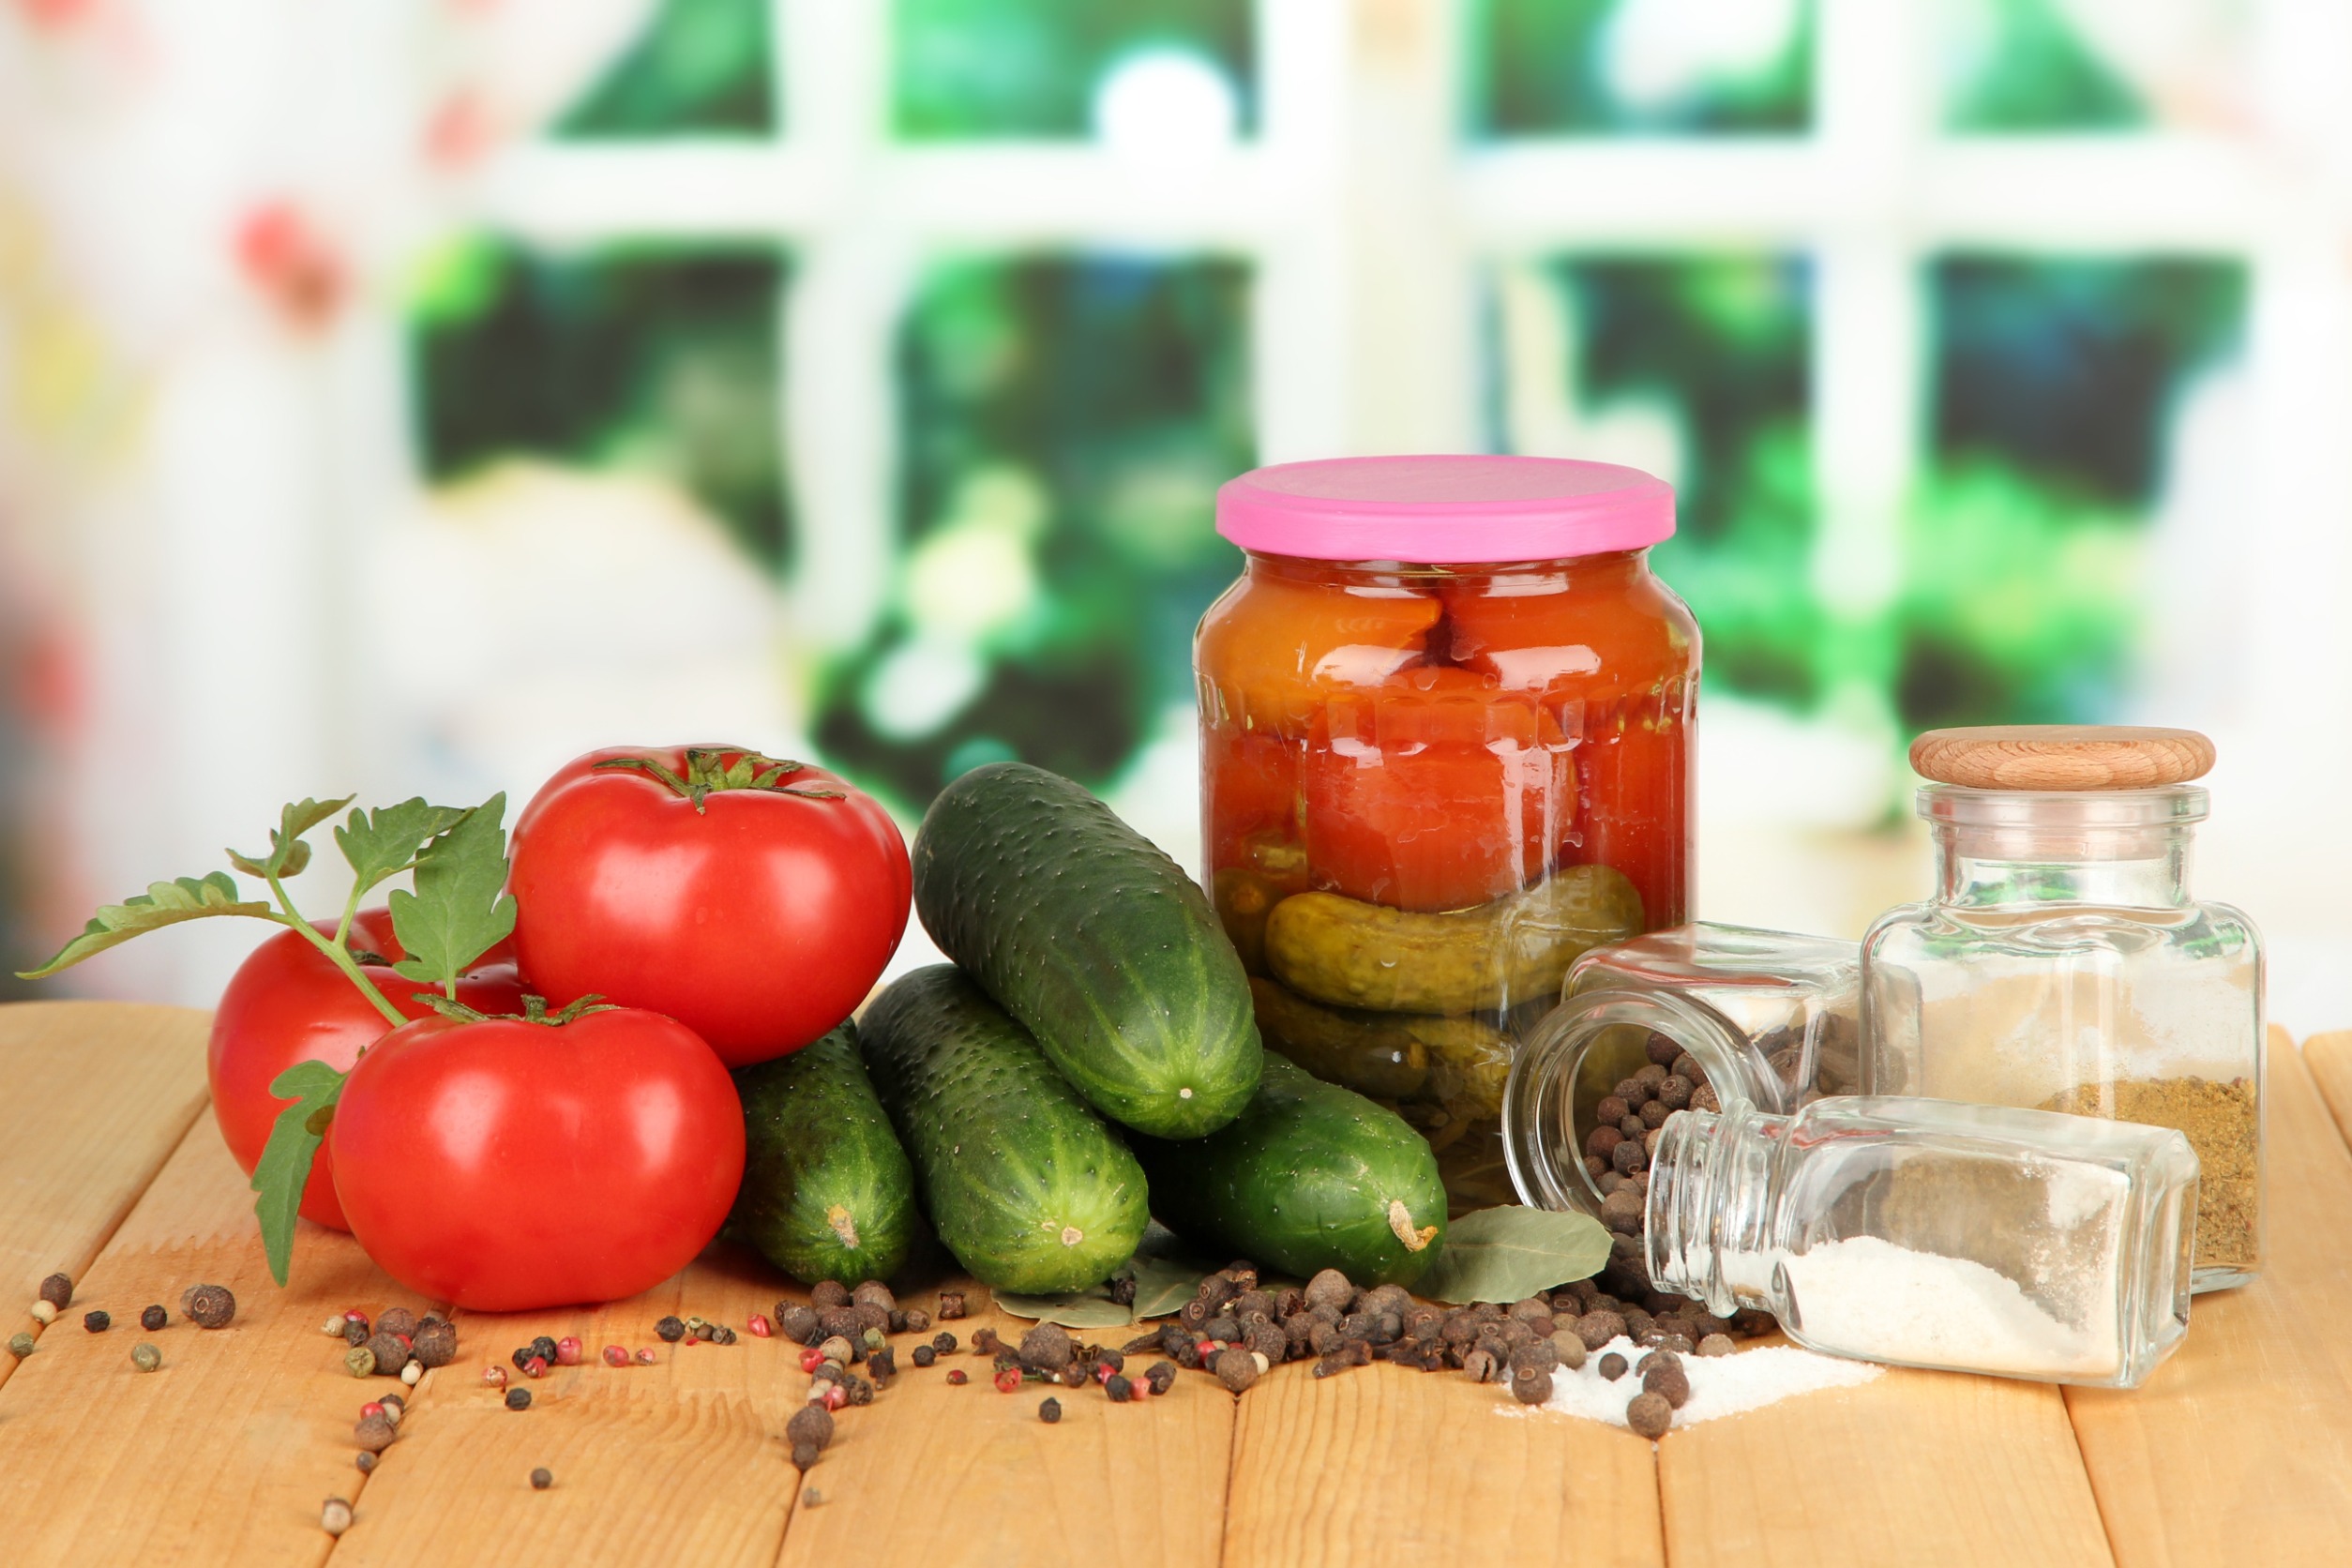 Огурцы с помидорами на зиму, пошаговый рецепт на ккал, фото, ингредиенты - Едим Дома